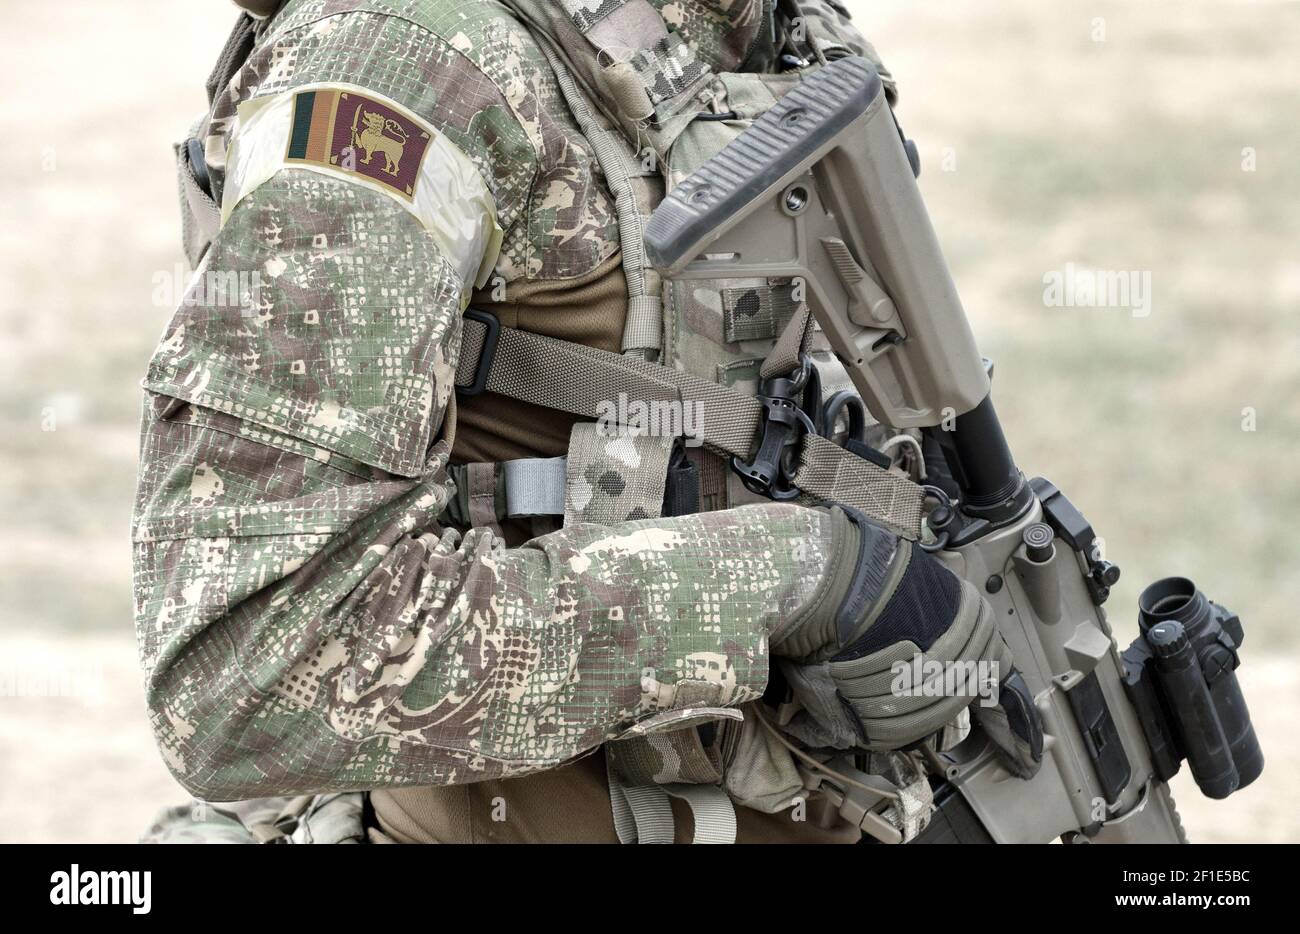 Soldat avec fusil d'assaut et drapeau du Sri Lanka sur l'uniforme militaire. Collage. Banque D'Images